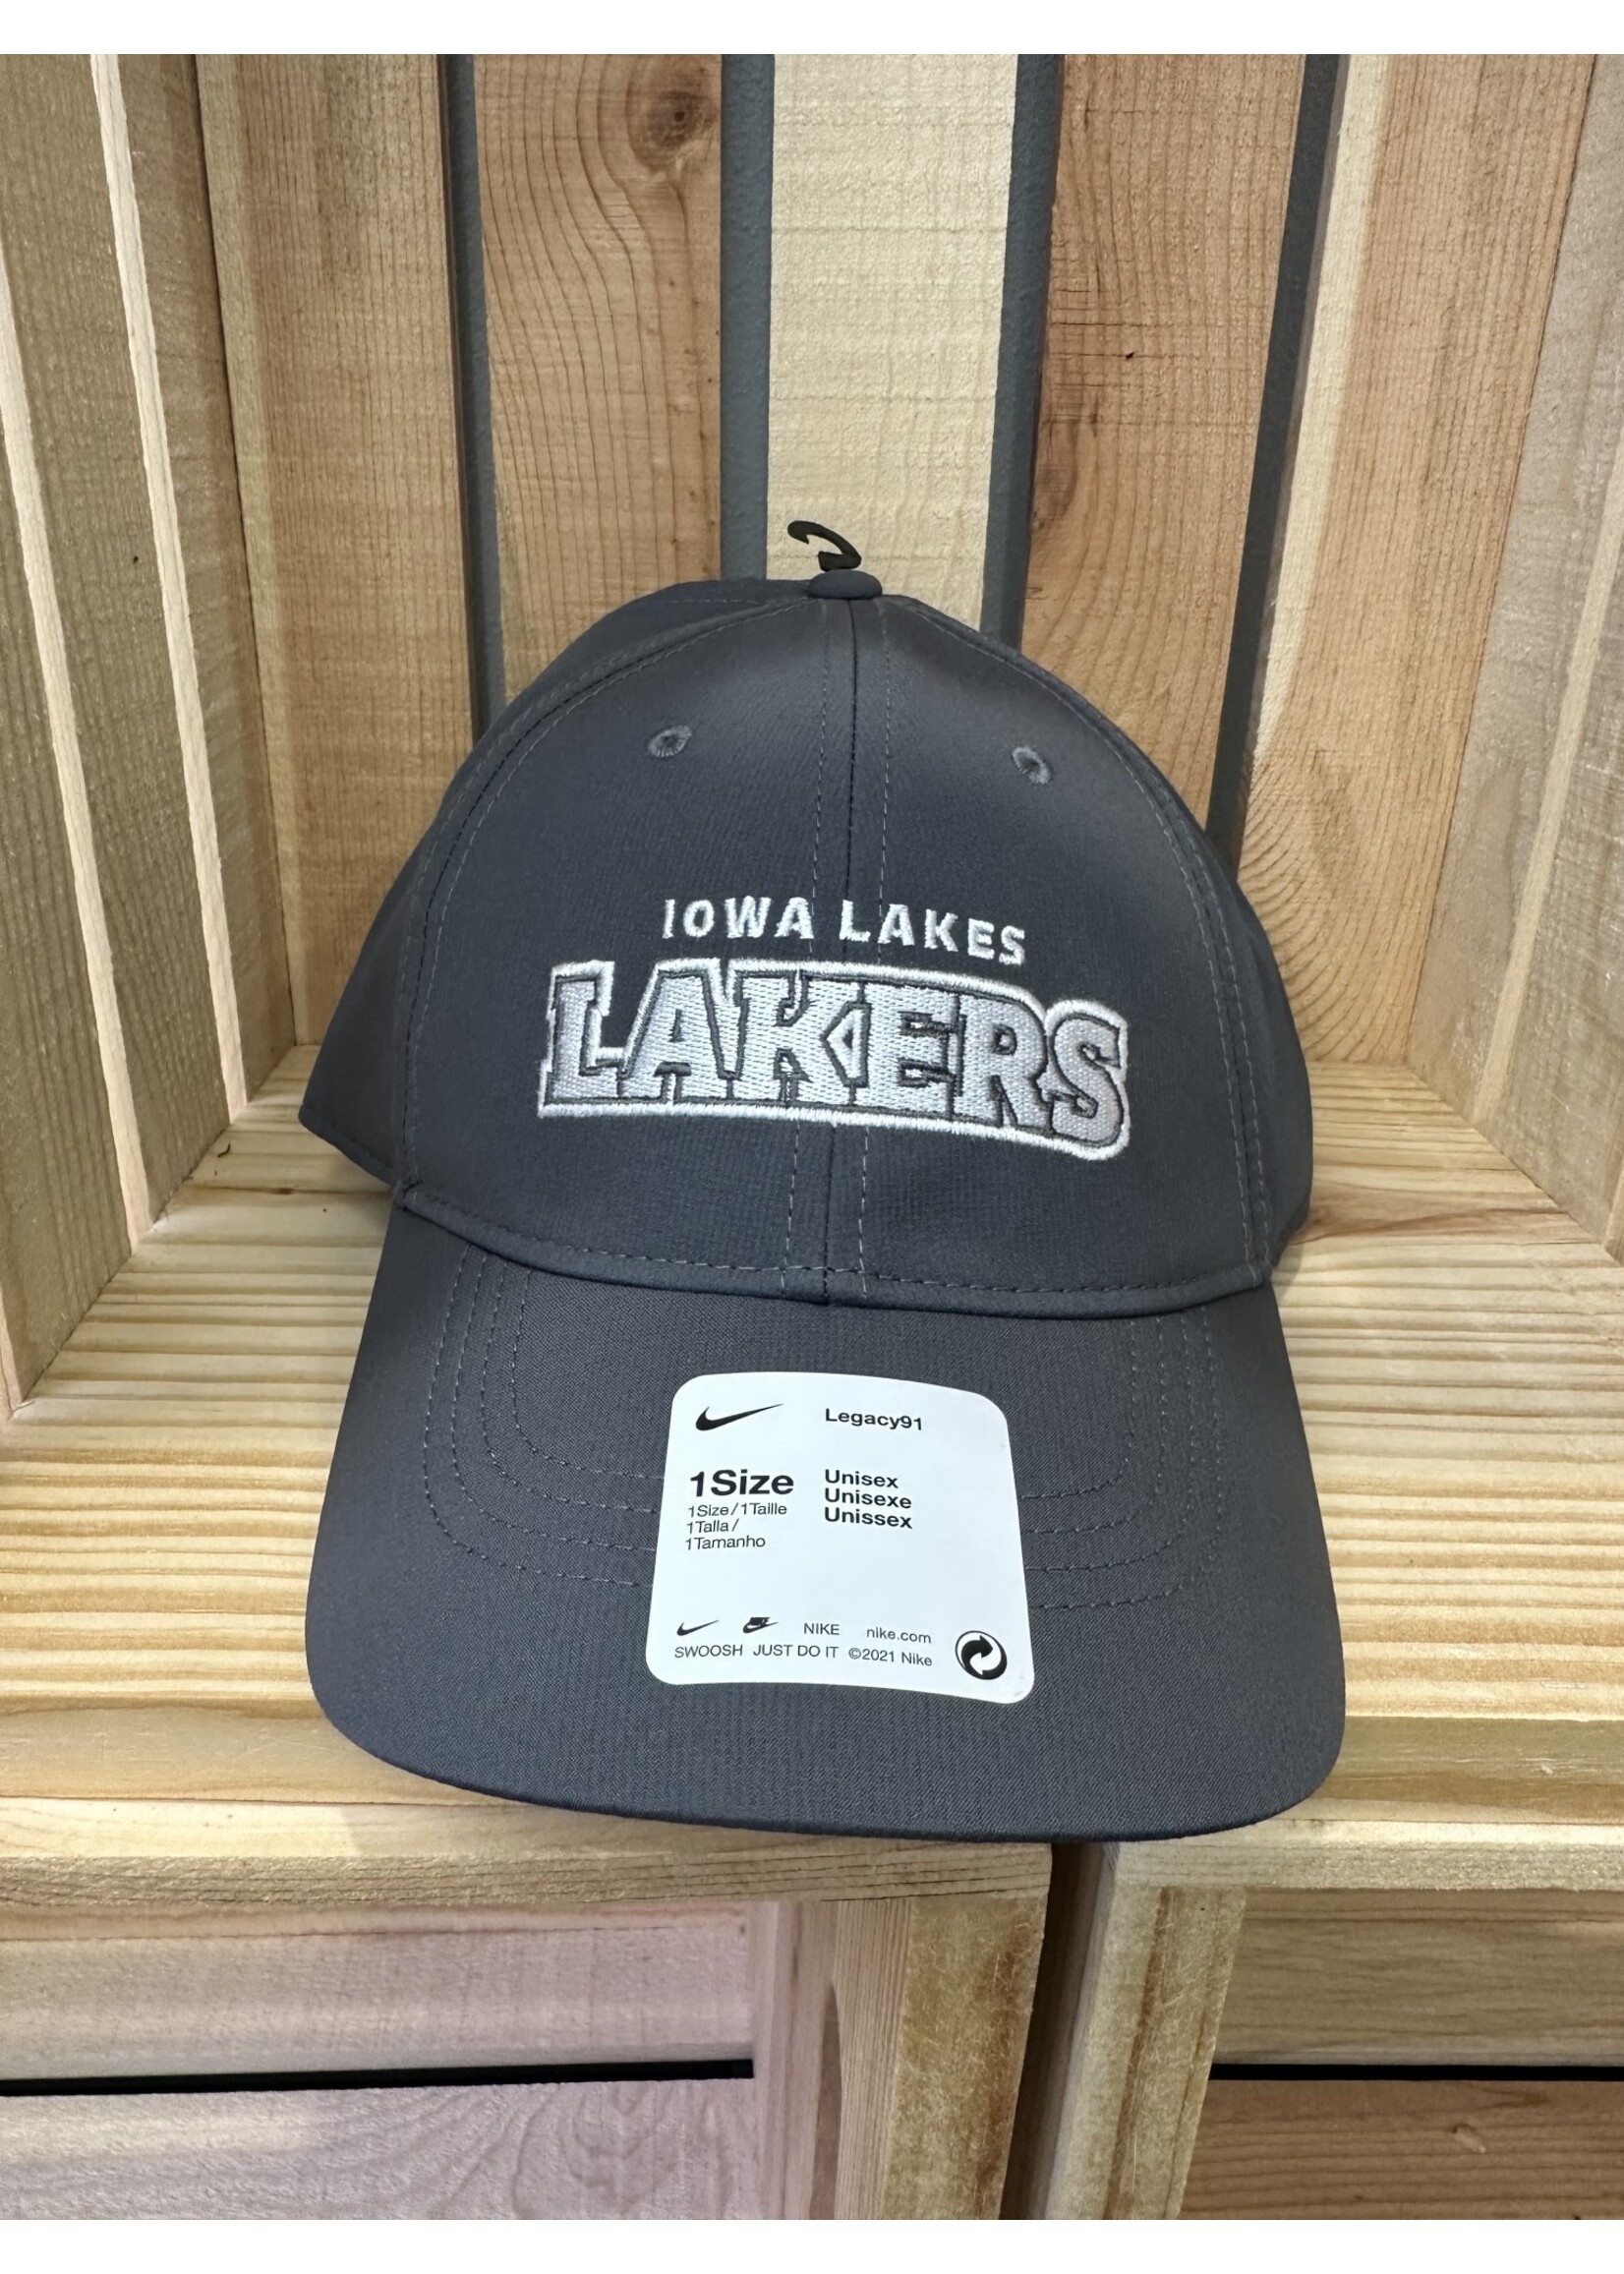 Iowa Lakes LAKERS Tech Cap - Dk Gray